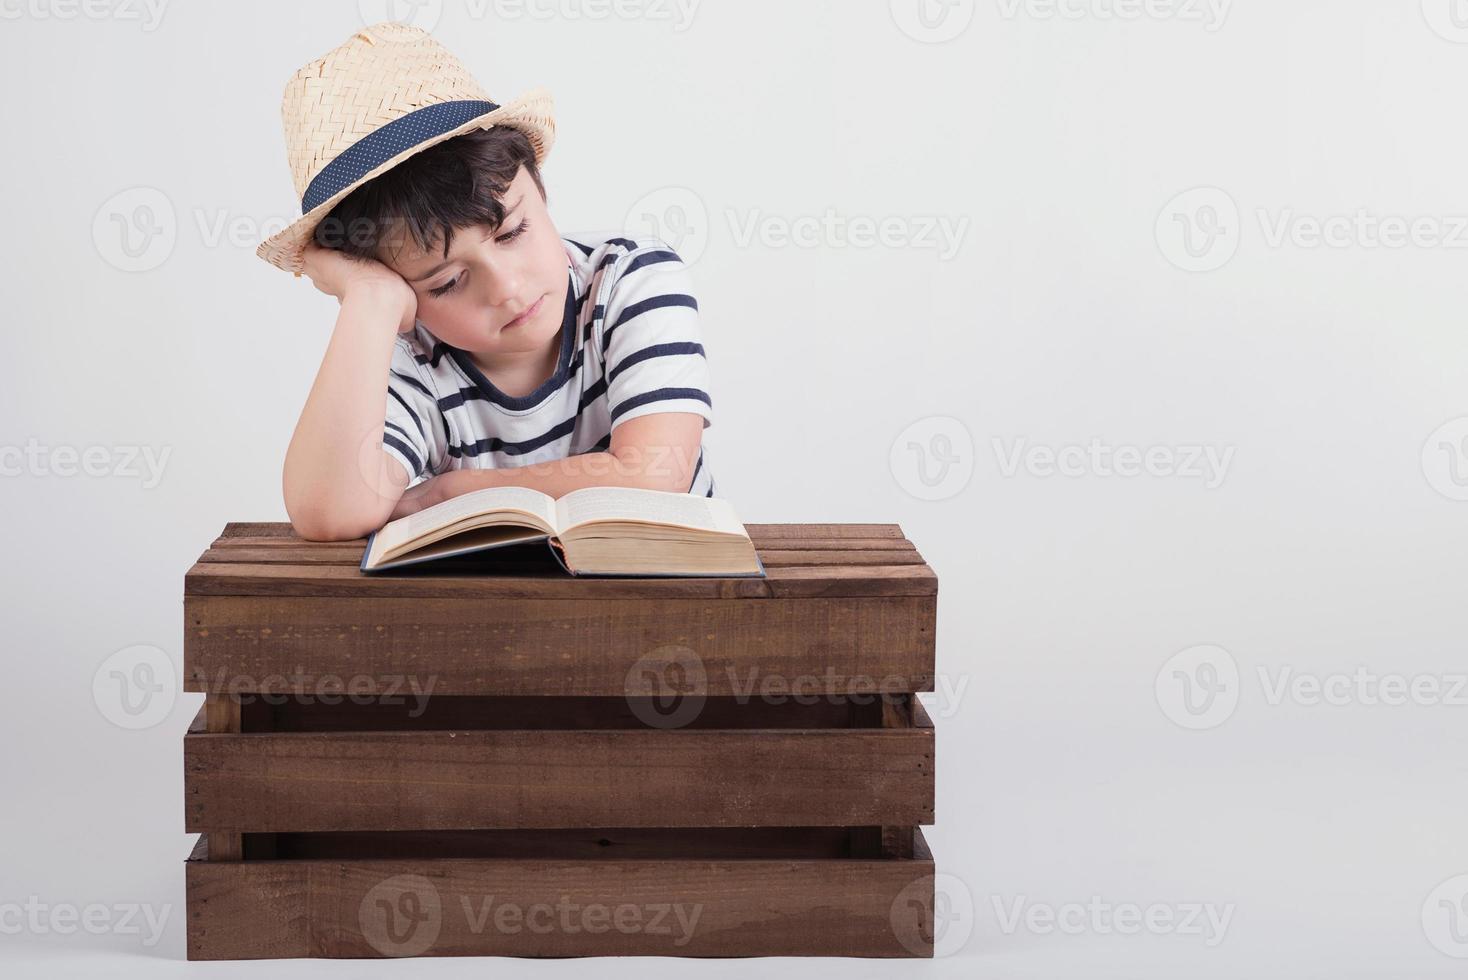 boy reading a book photo